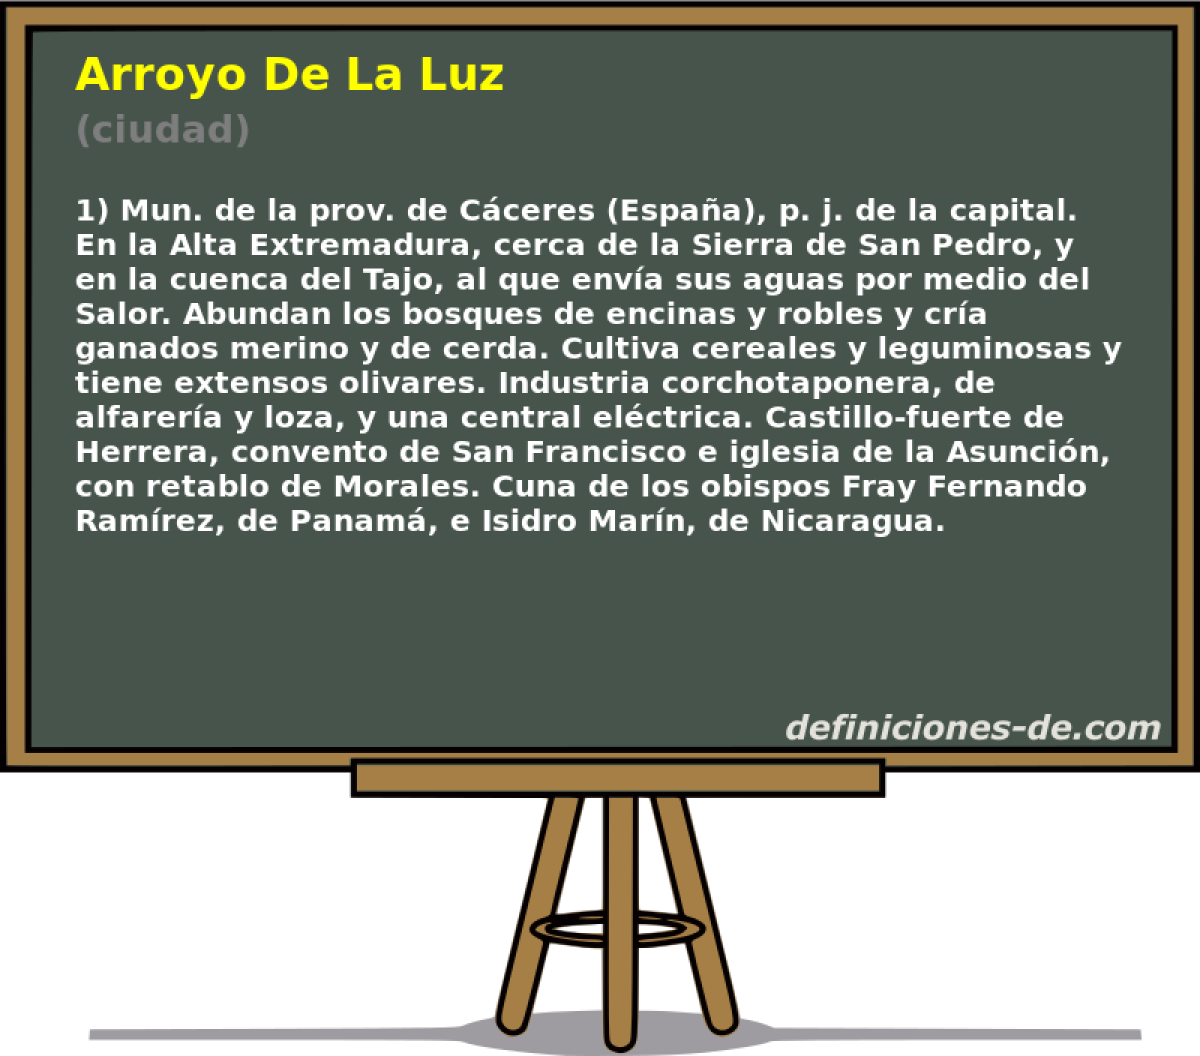 Arroyo De La Luz (ciudad)